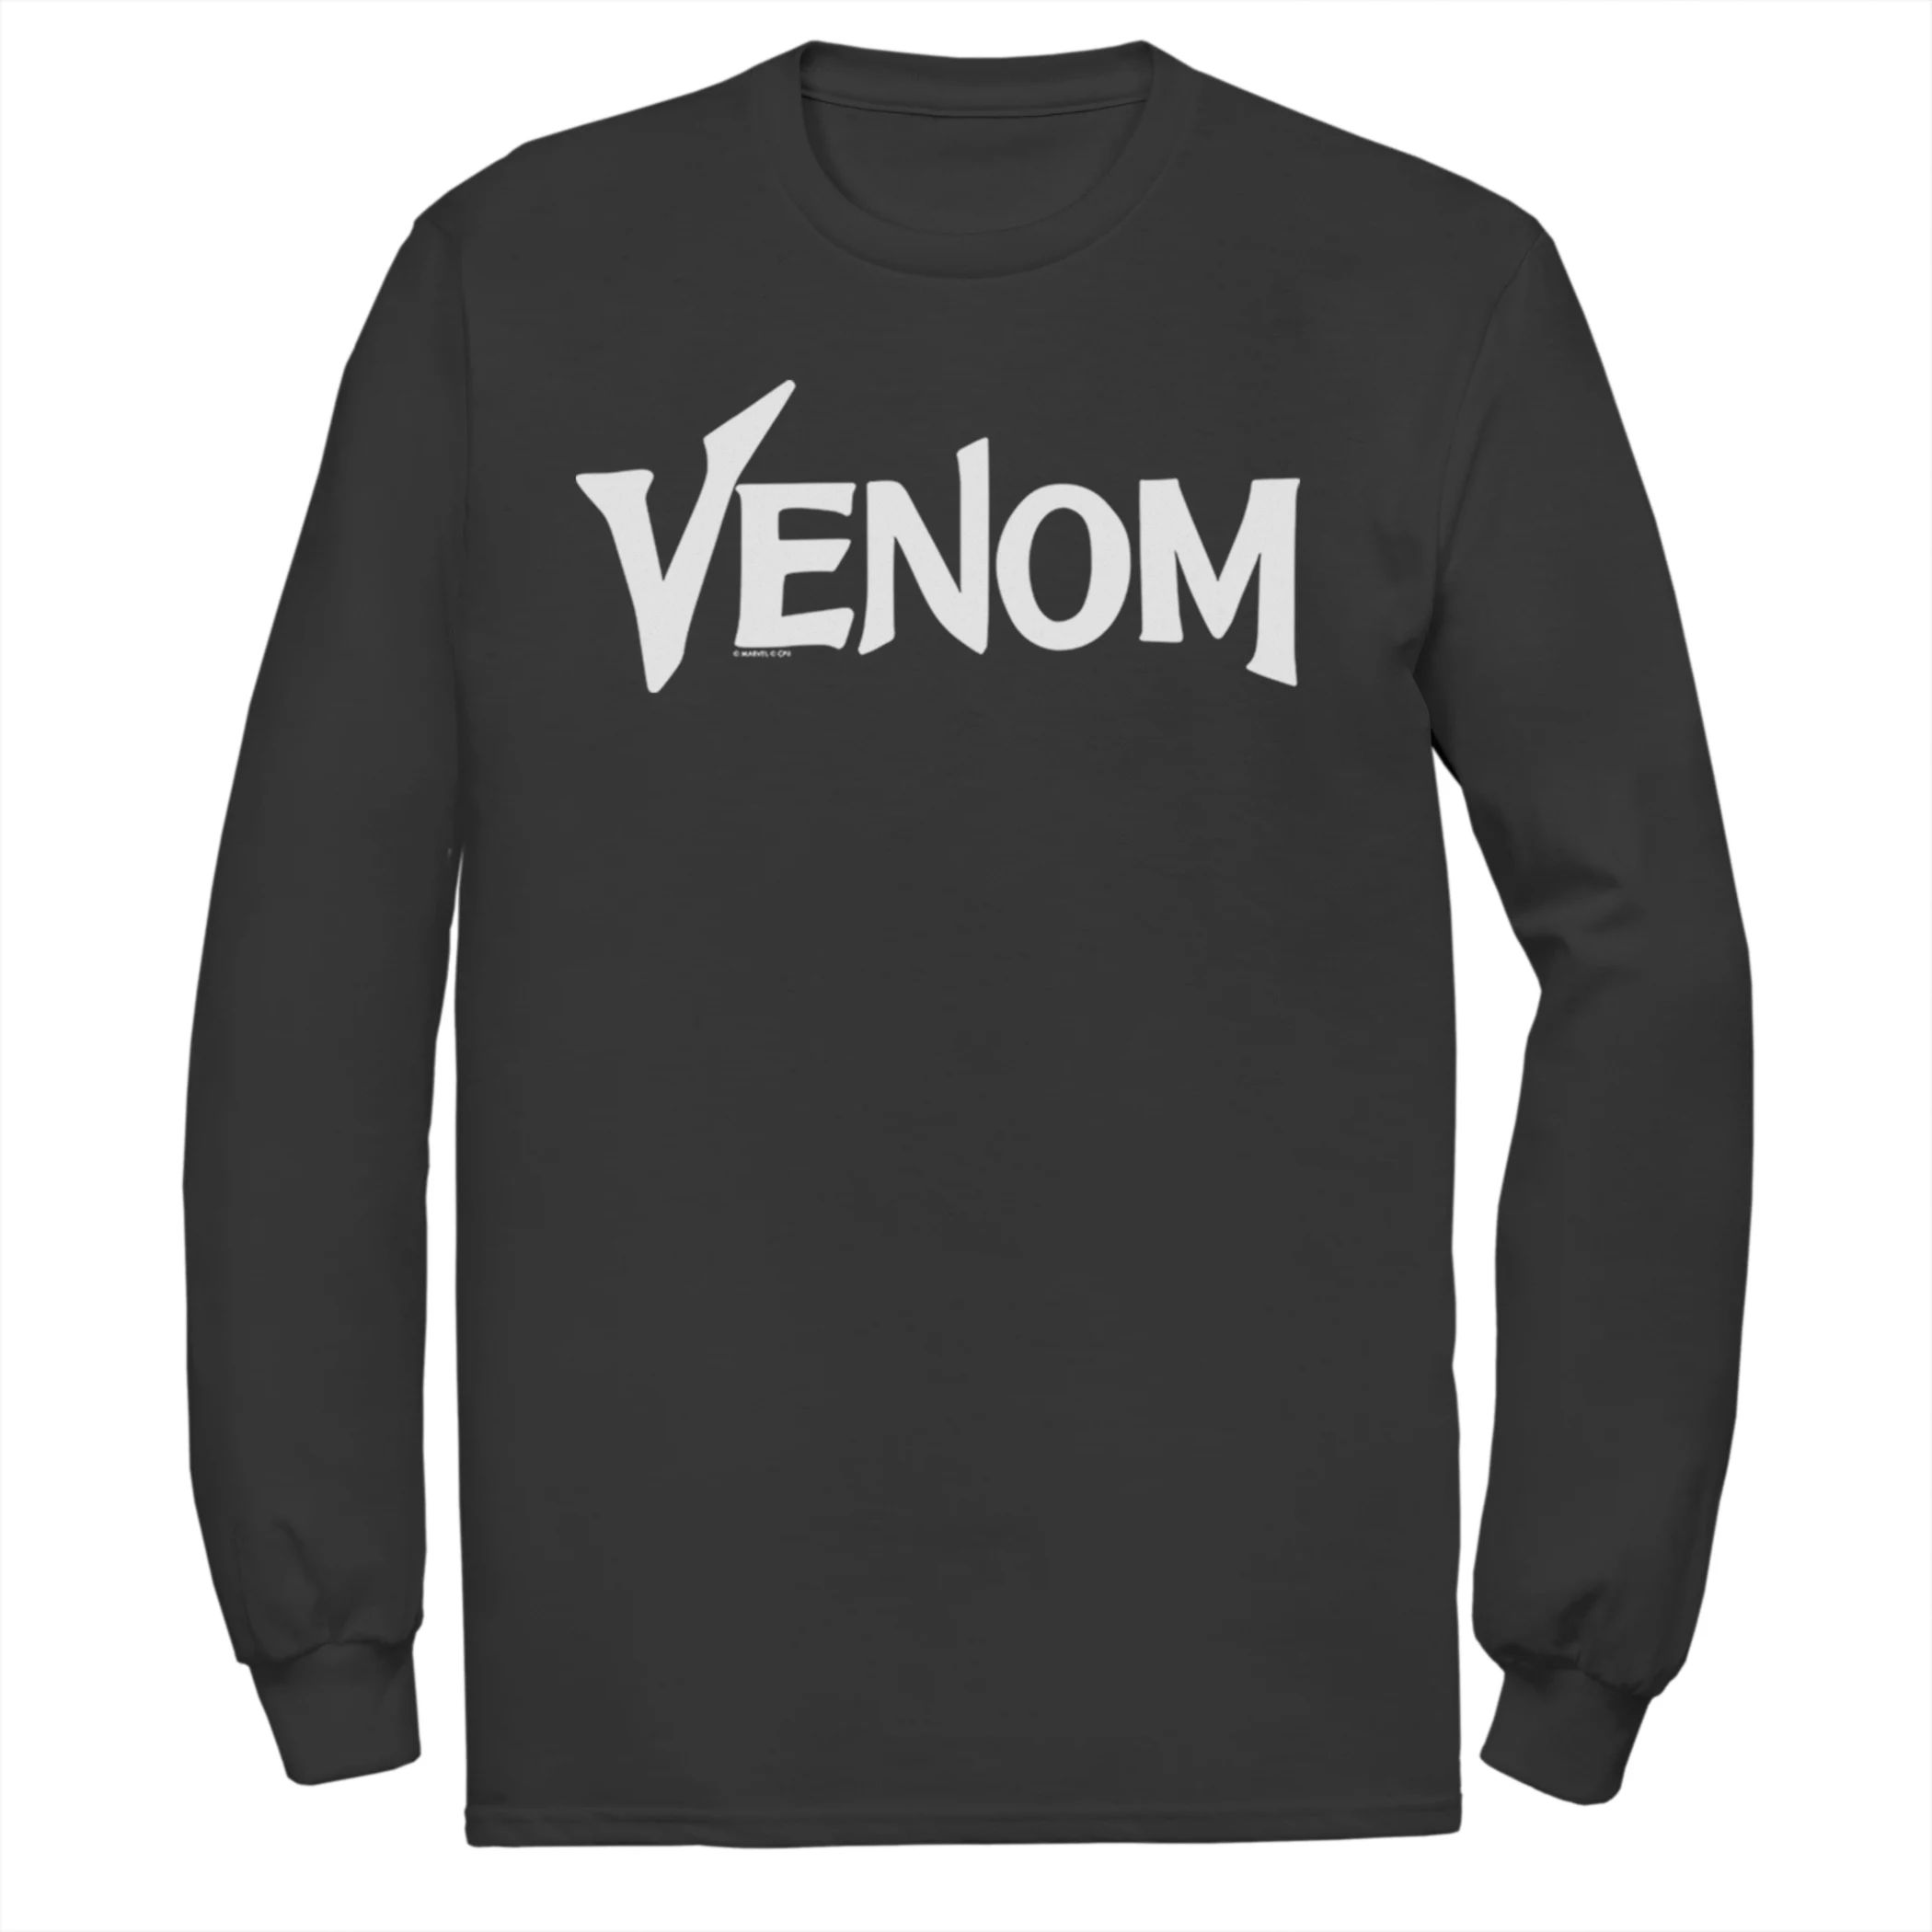 Мужская футболка с логотипом Marvel Venom Licensed Character мужская толстовка с логотипом venom classic marvel